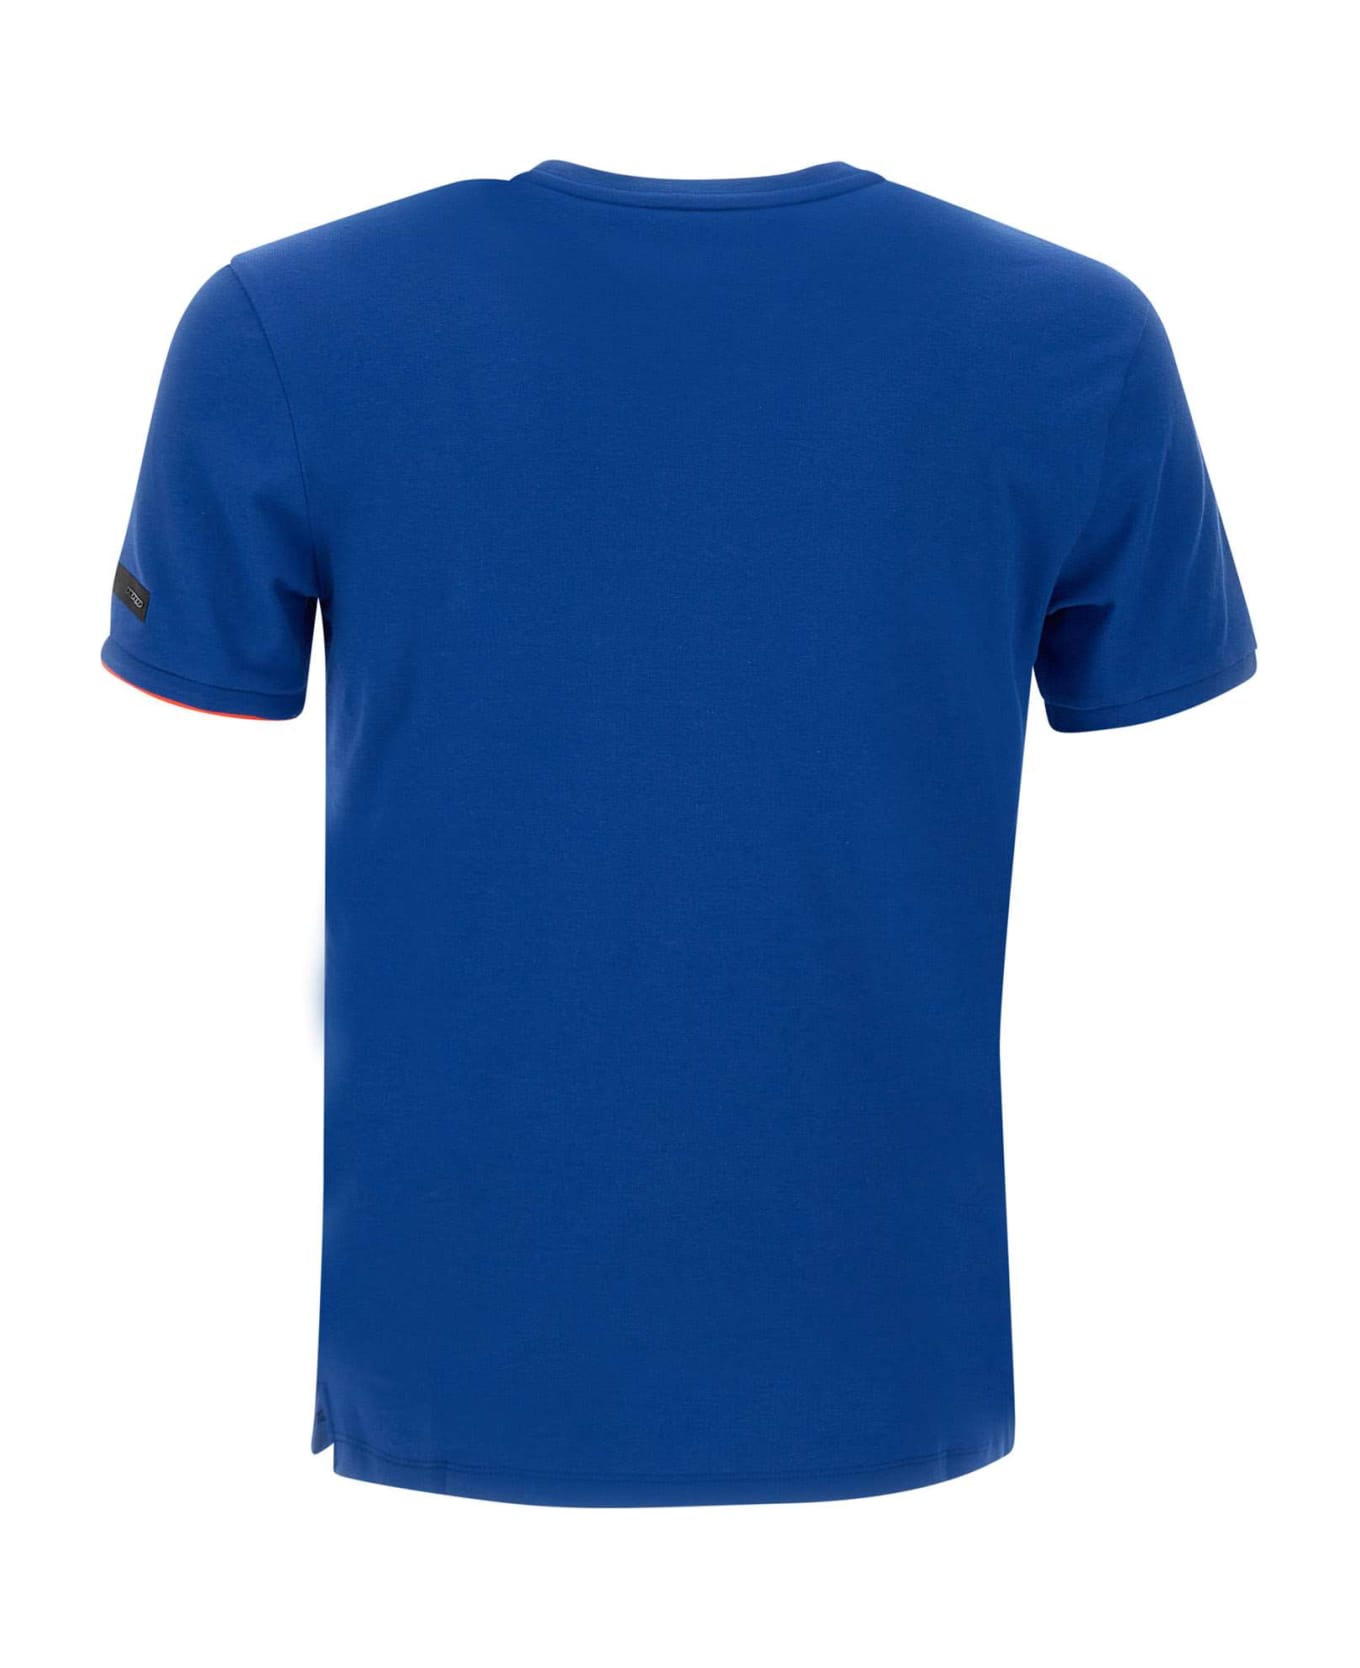 RRD - Roberto Ricci Design 'shirty Macro' T-shirt - Blu New Royal